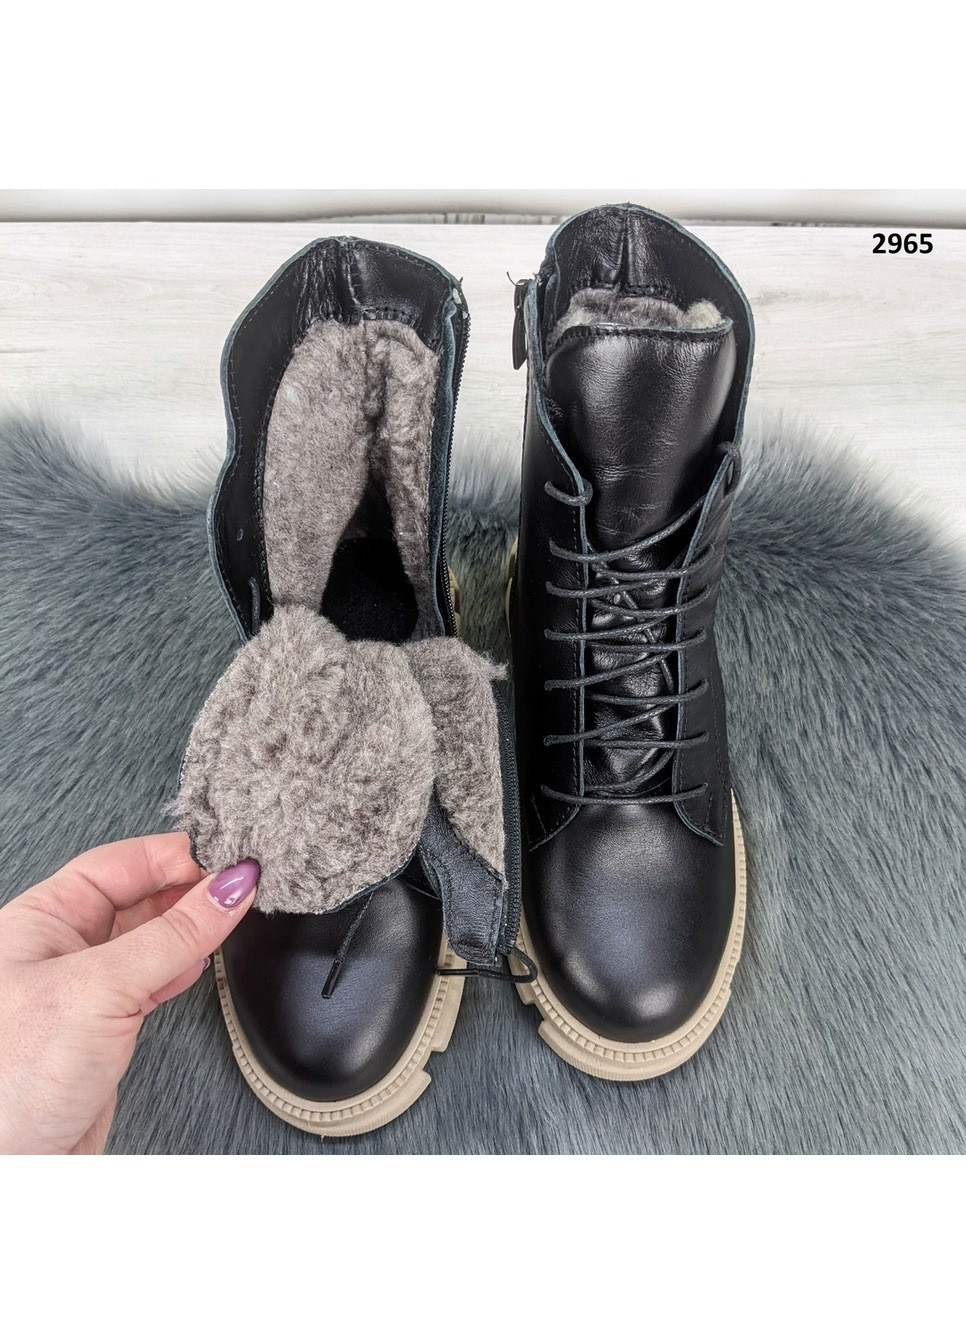 Зимние ботинки женские зимние кожаные на шнурках Viscala